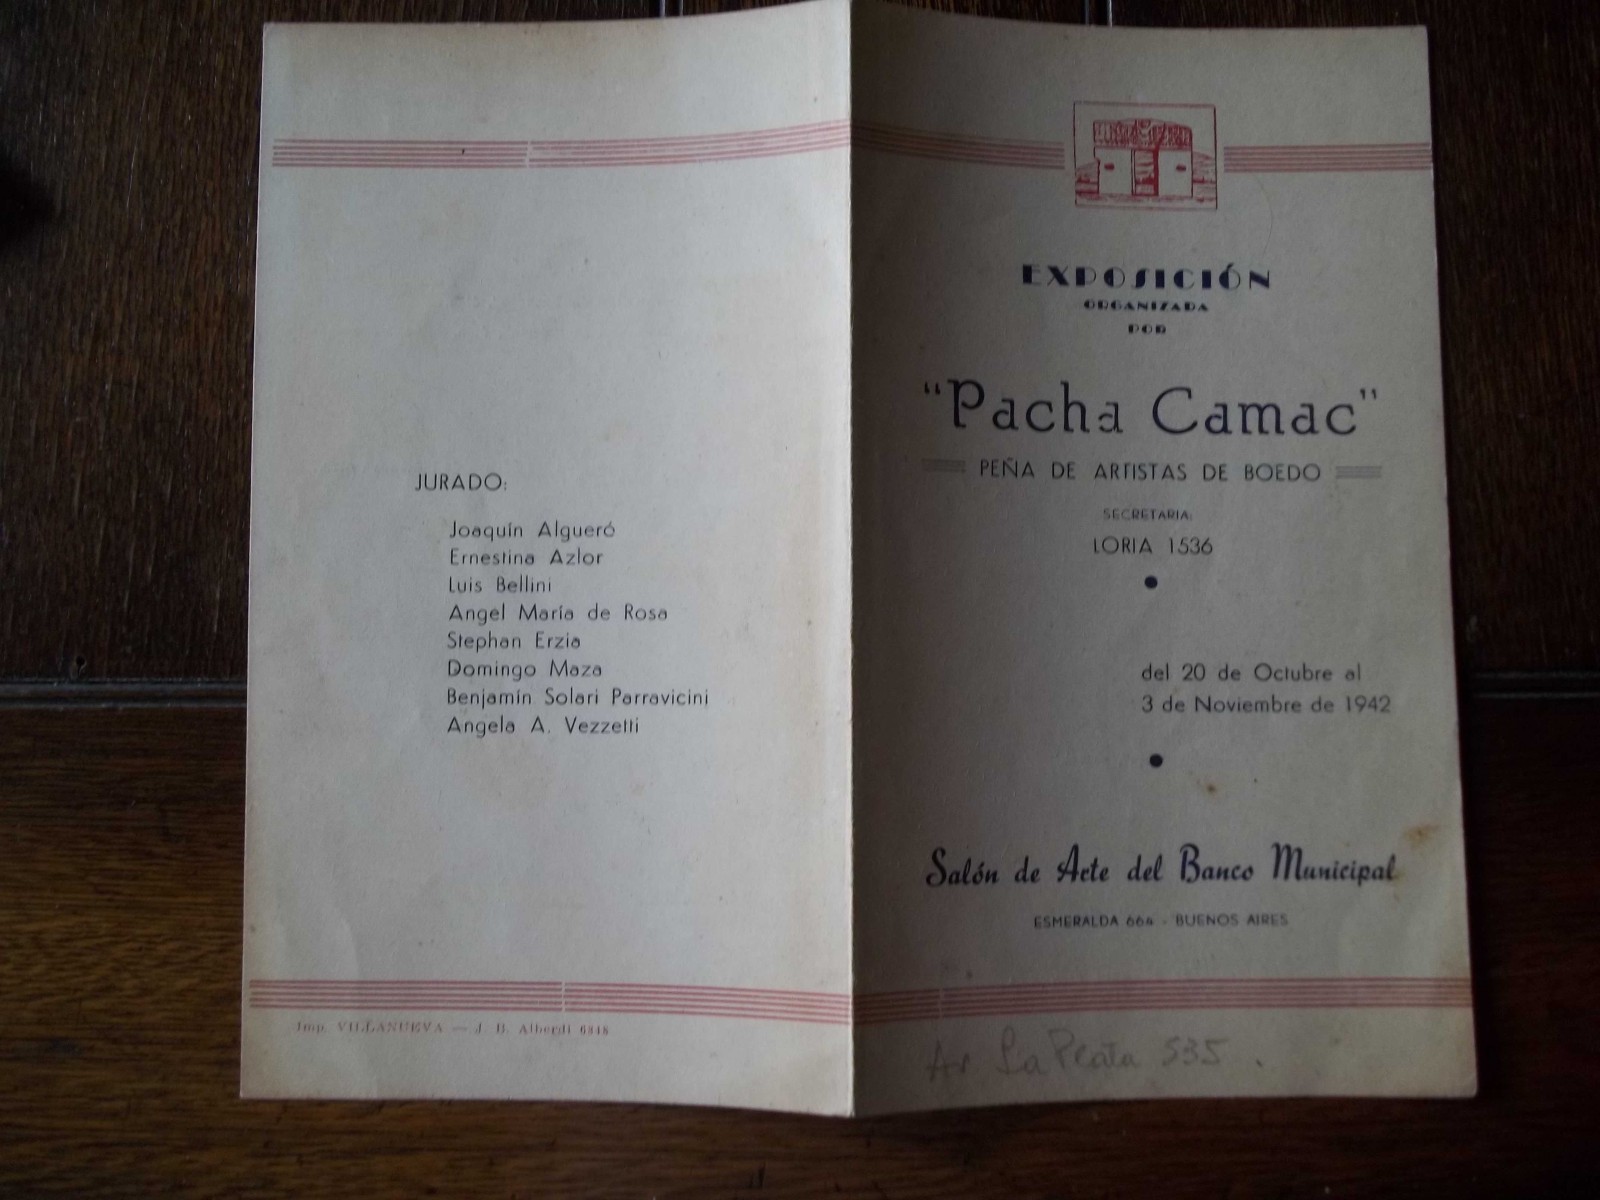 Pacha Camac, Exposición, 3 de noviembre de 1942